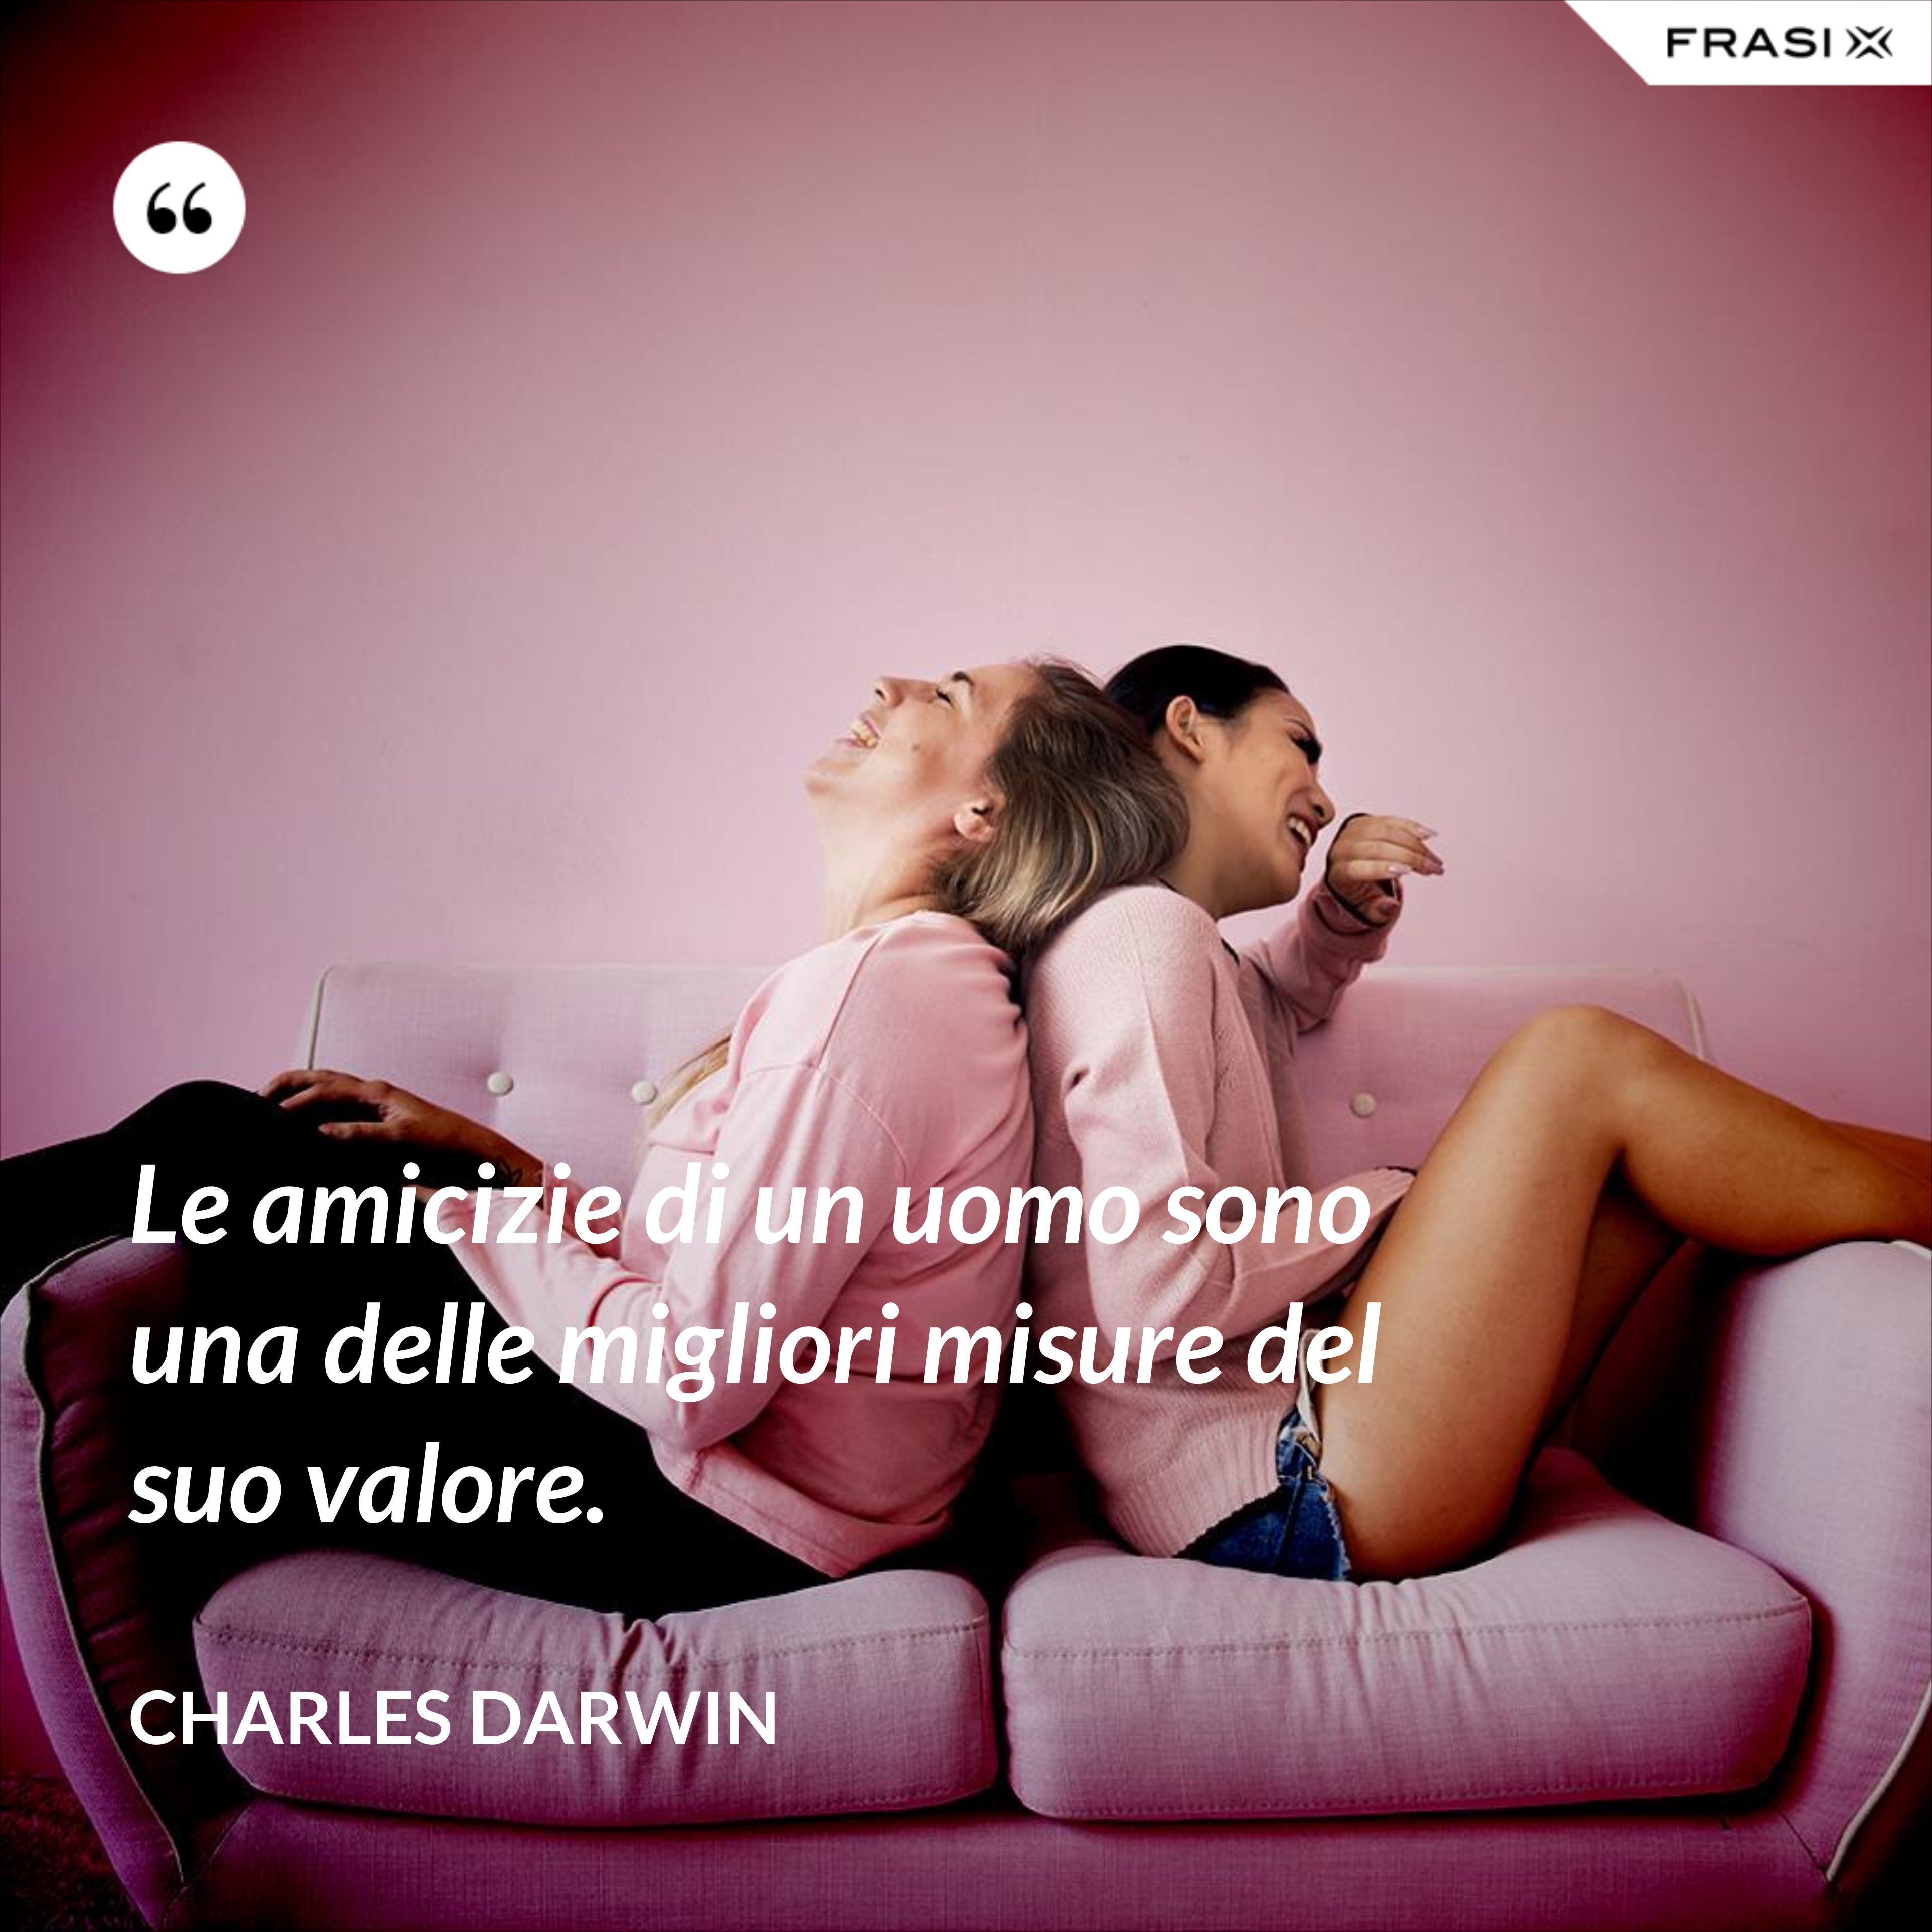 Le amicizie di un uomo sono una delle migliori misure del suo valore. - Charles Darwin